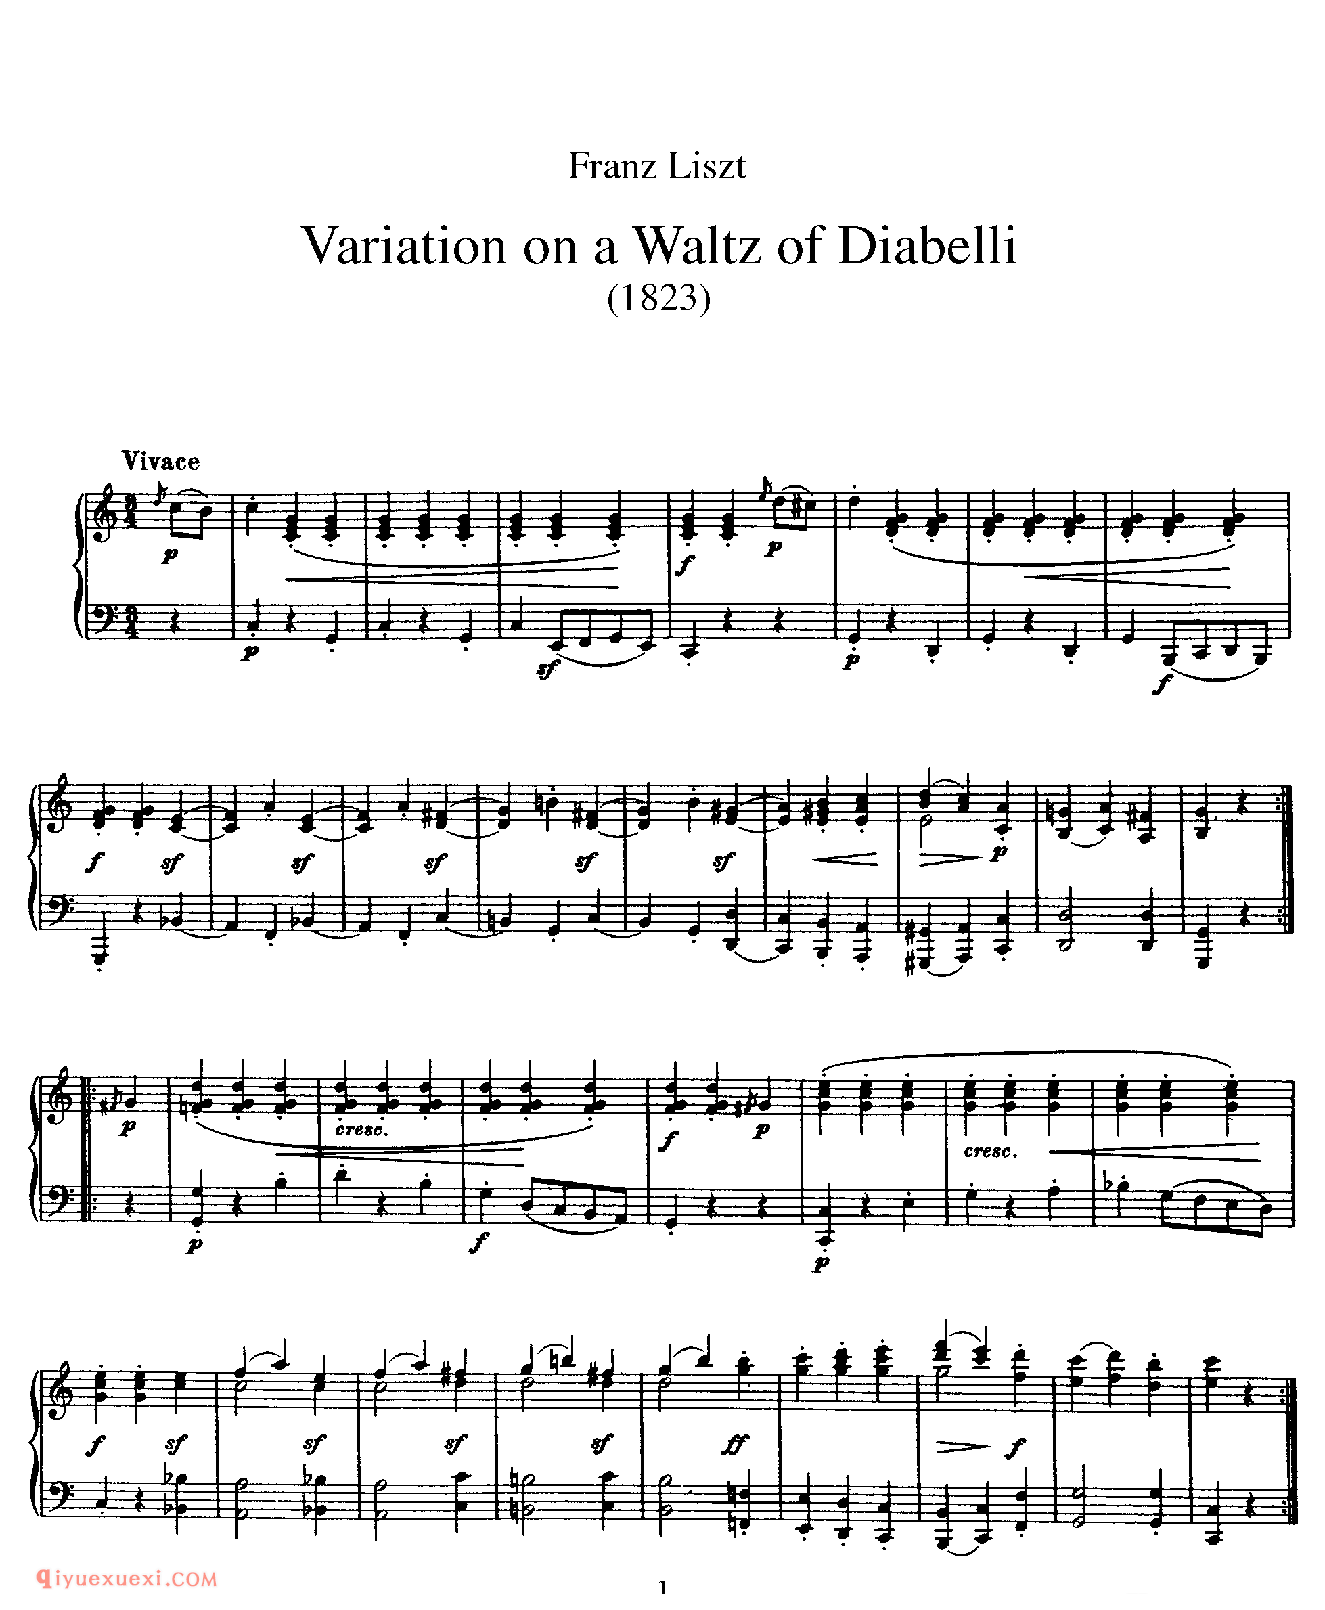 李斯特《迪亚贝利圆舞曲主题变奏曲》Variation on a Waltz of Diabelli_李斯特钢琴乐谱